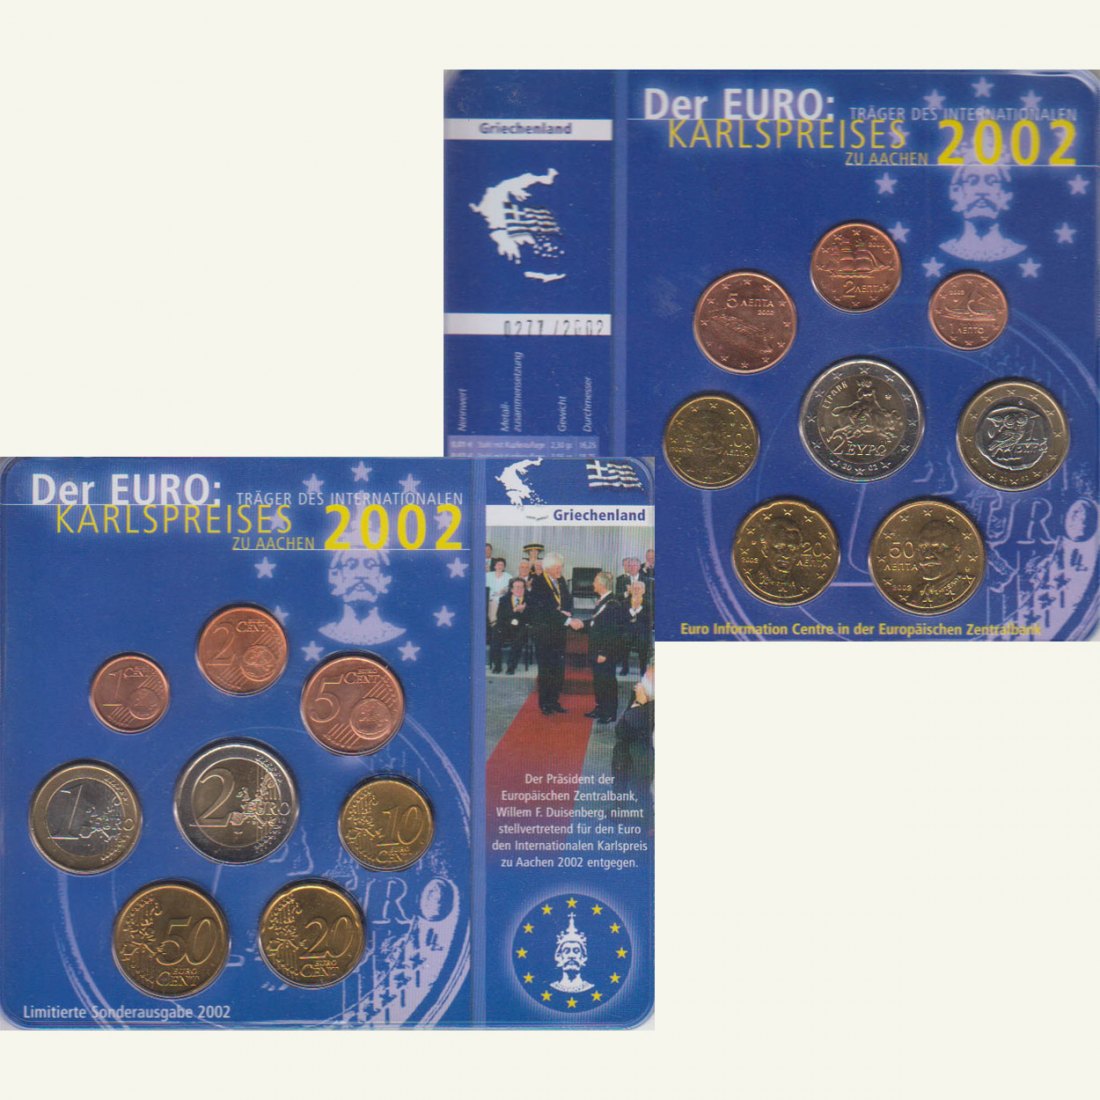  Sonder-KMS Griechenland *Karlspreis für den Euro* 2002 nur 2.002 Stück!   